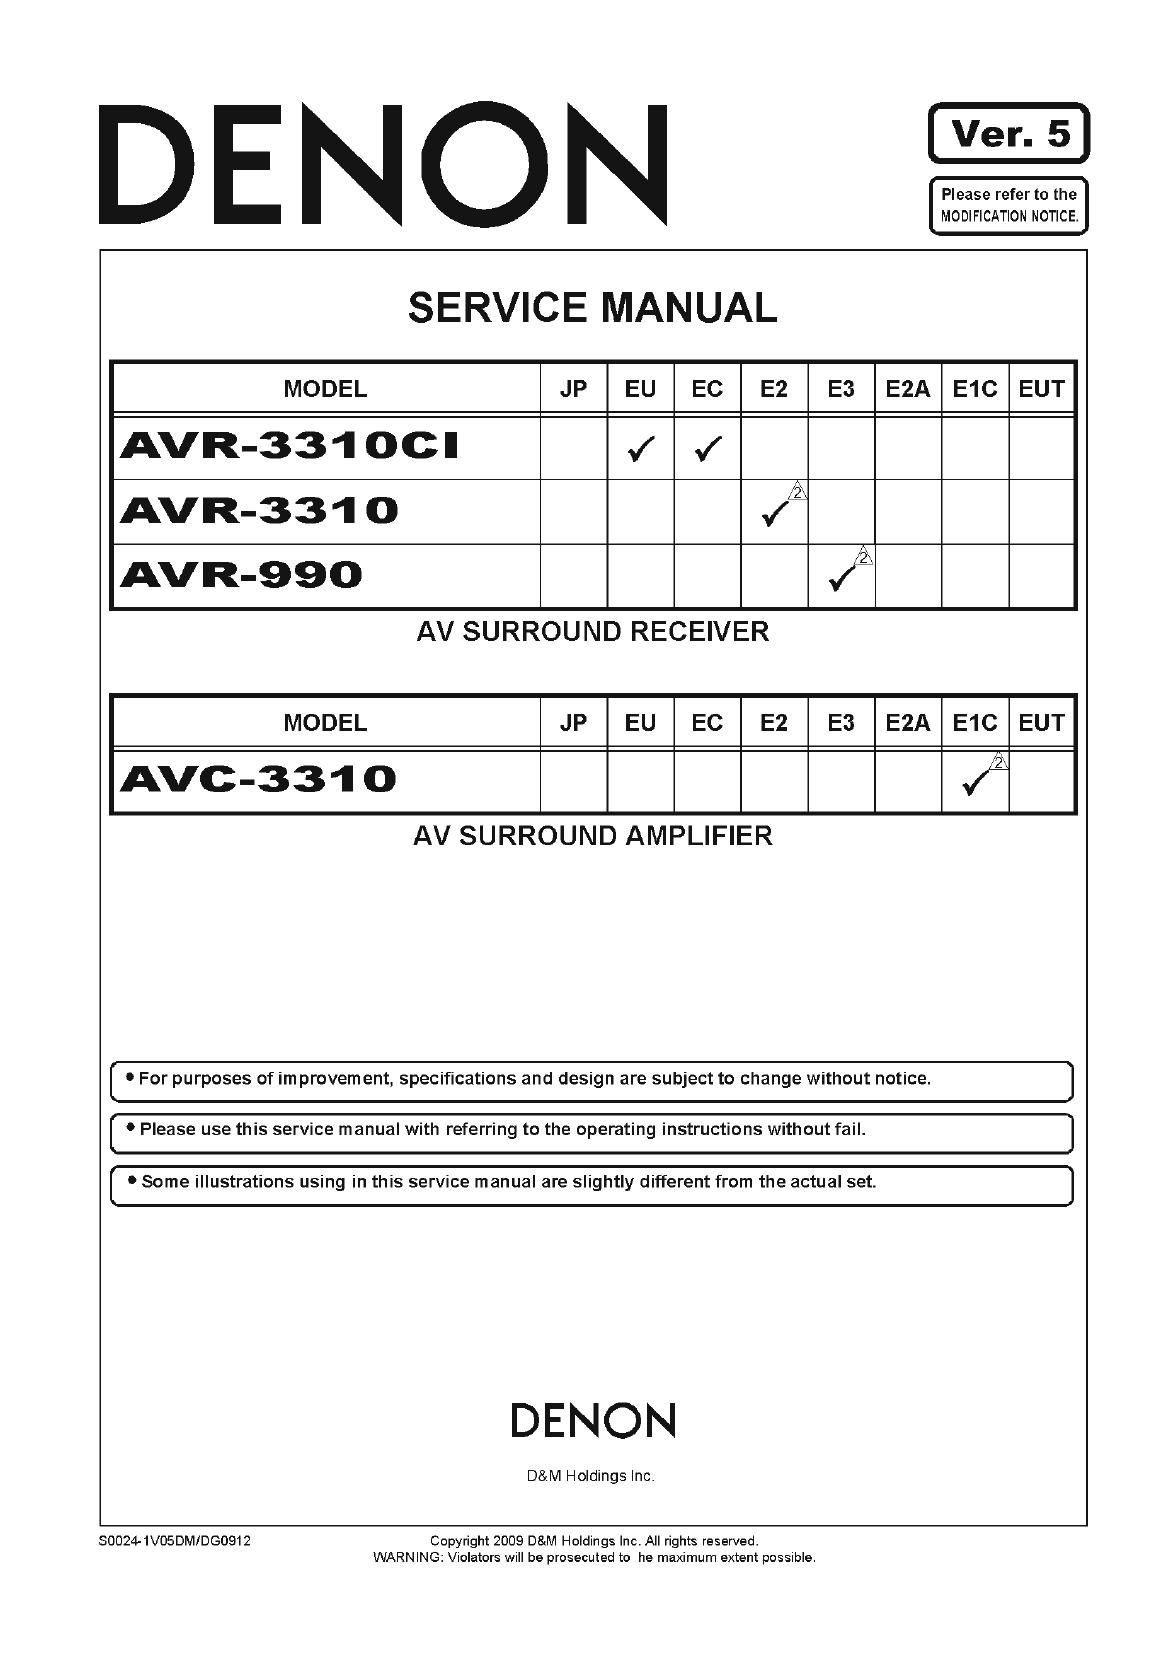 Denon AVR 3310 CI Service Manual